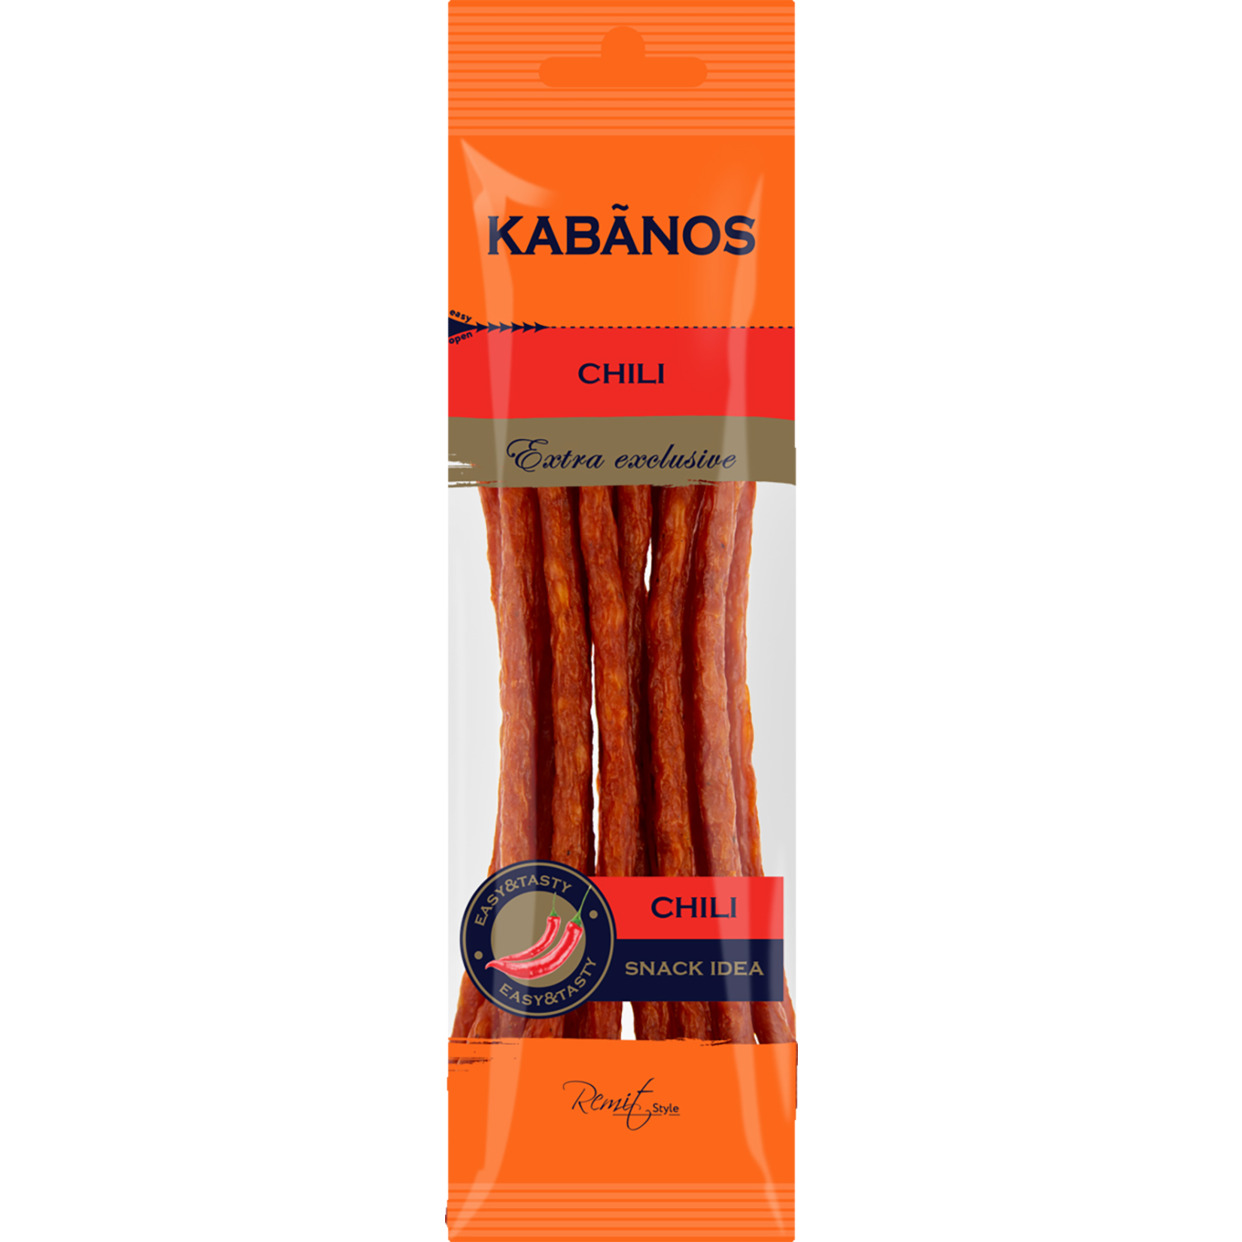 Колбаски сырокопченые KABANOS Chili 70 гр. по акции в Пятерочке